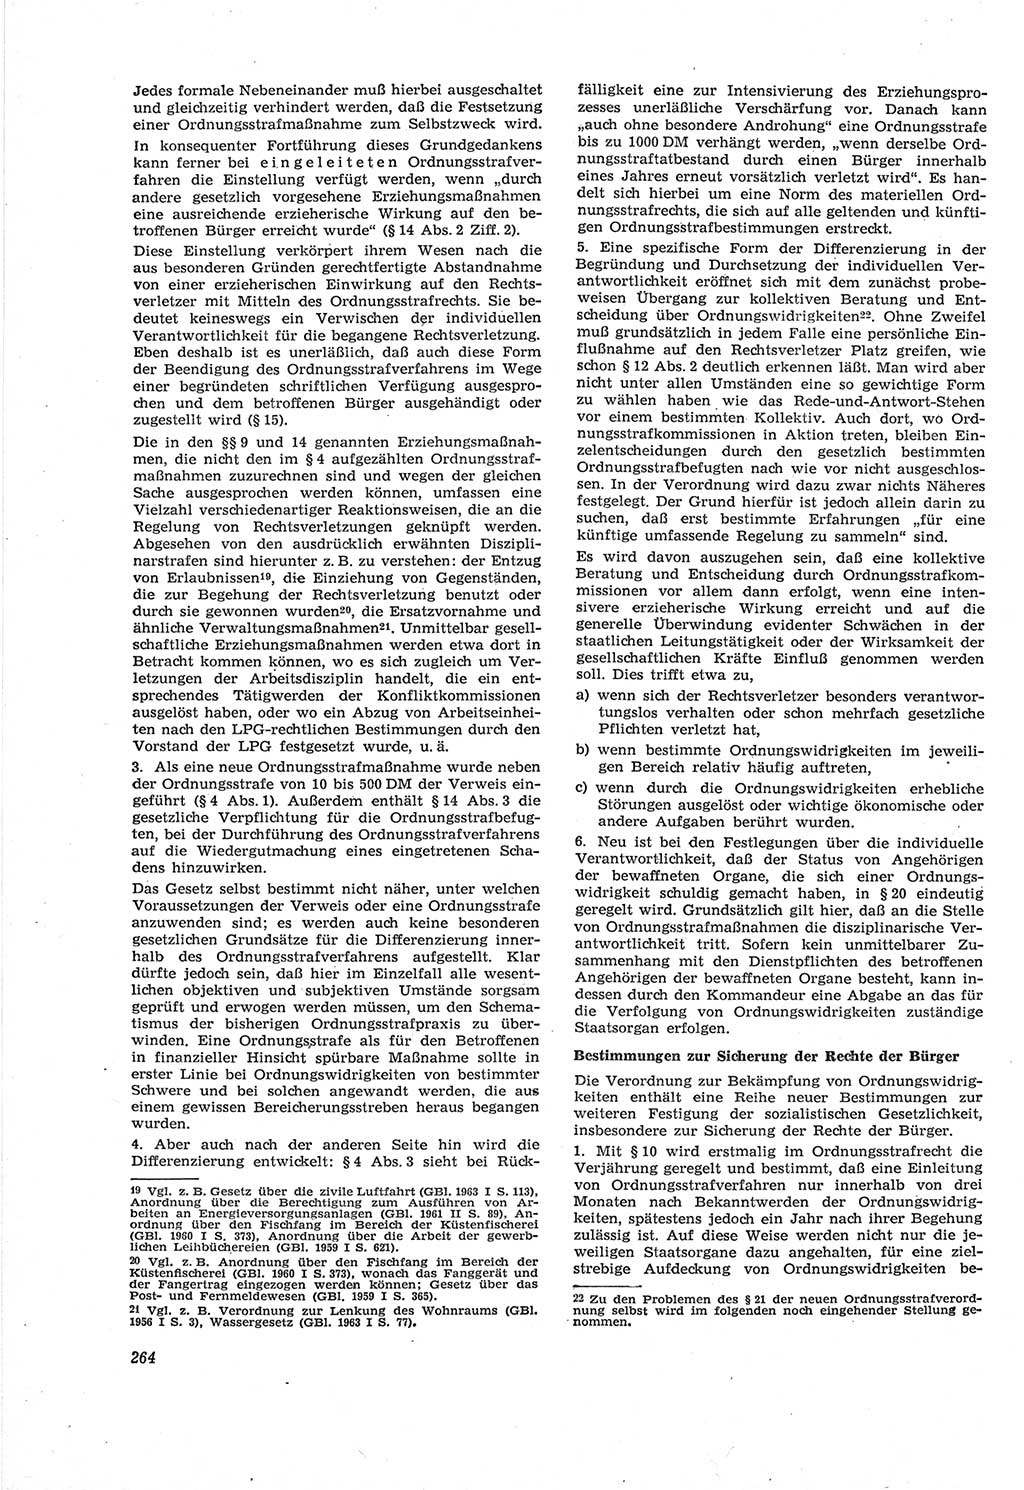 Neue Justiz (NJ), Zeitschrift für Recht und Rechtswissenschaft [Deutsche Demokratische Republik (DDR)], 18. Jahrgang 1964, Seite 264 (NJ DDR 1964, S. 264)